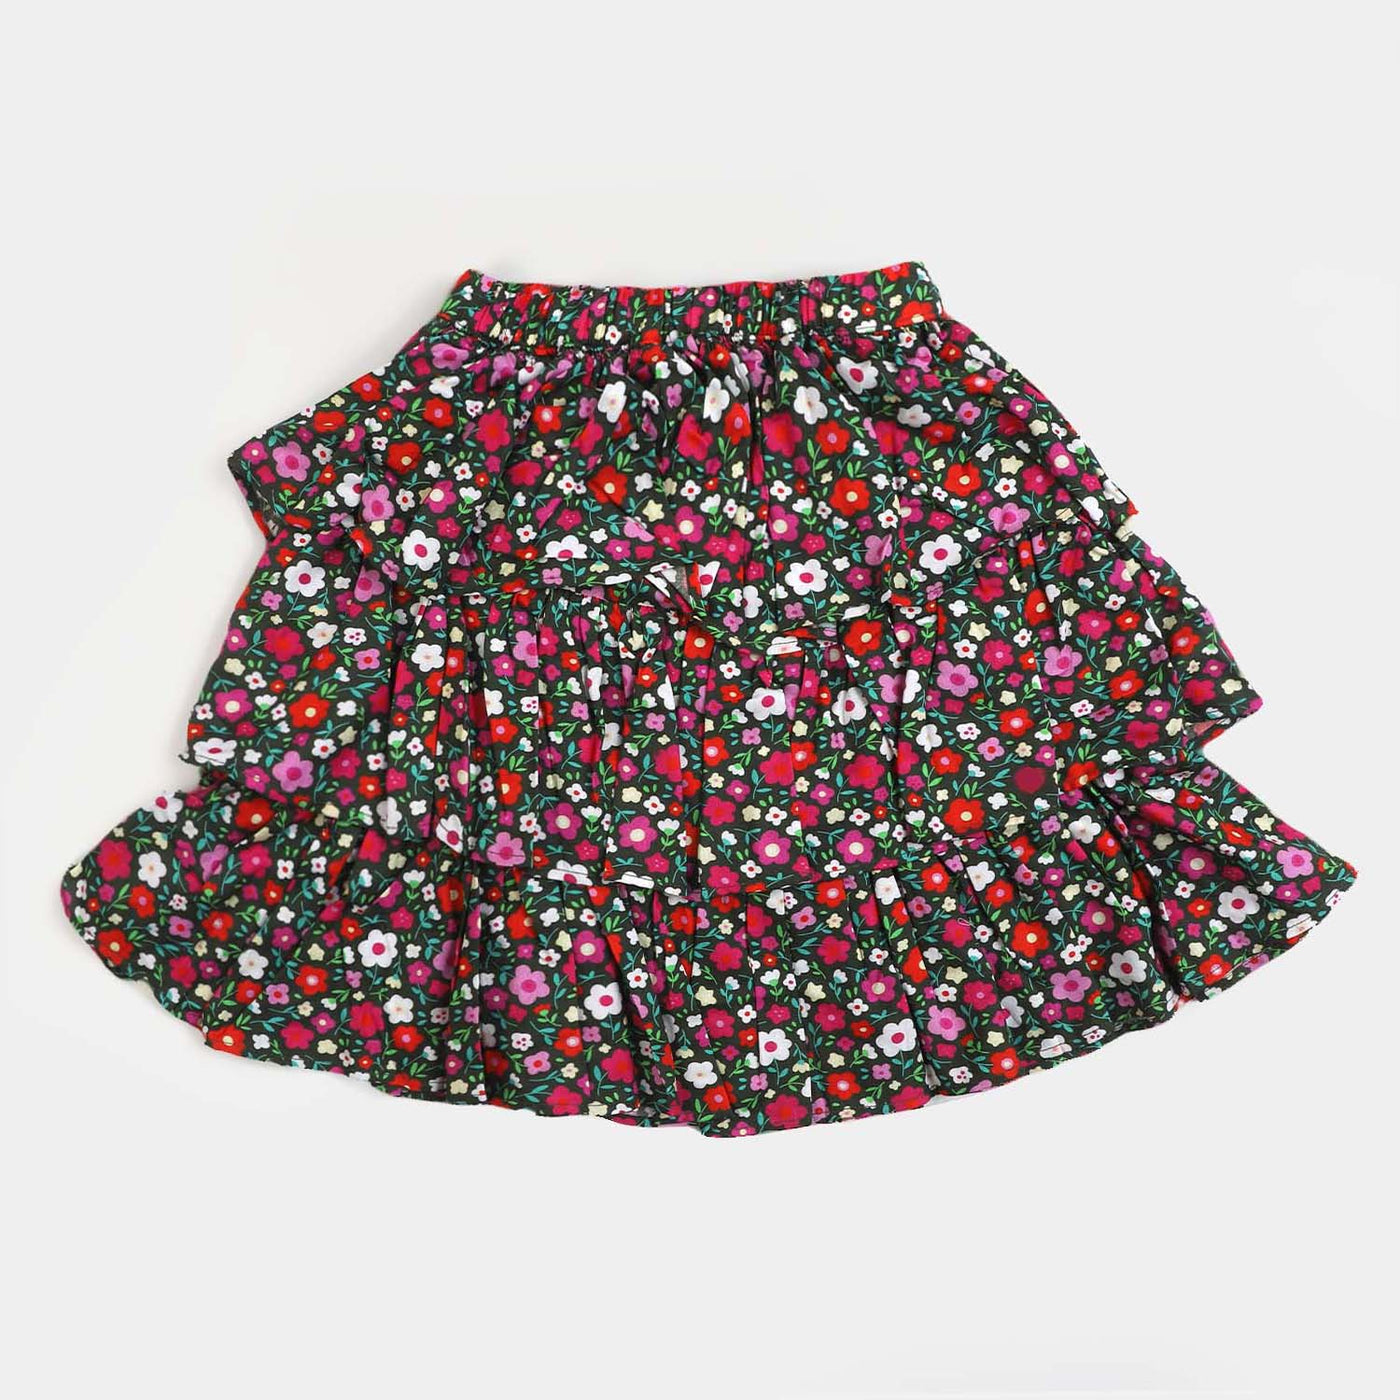 Girls Flowers Casual Skirt - Multi